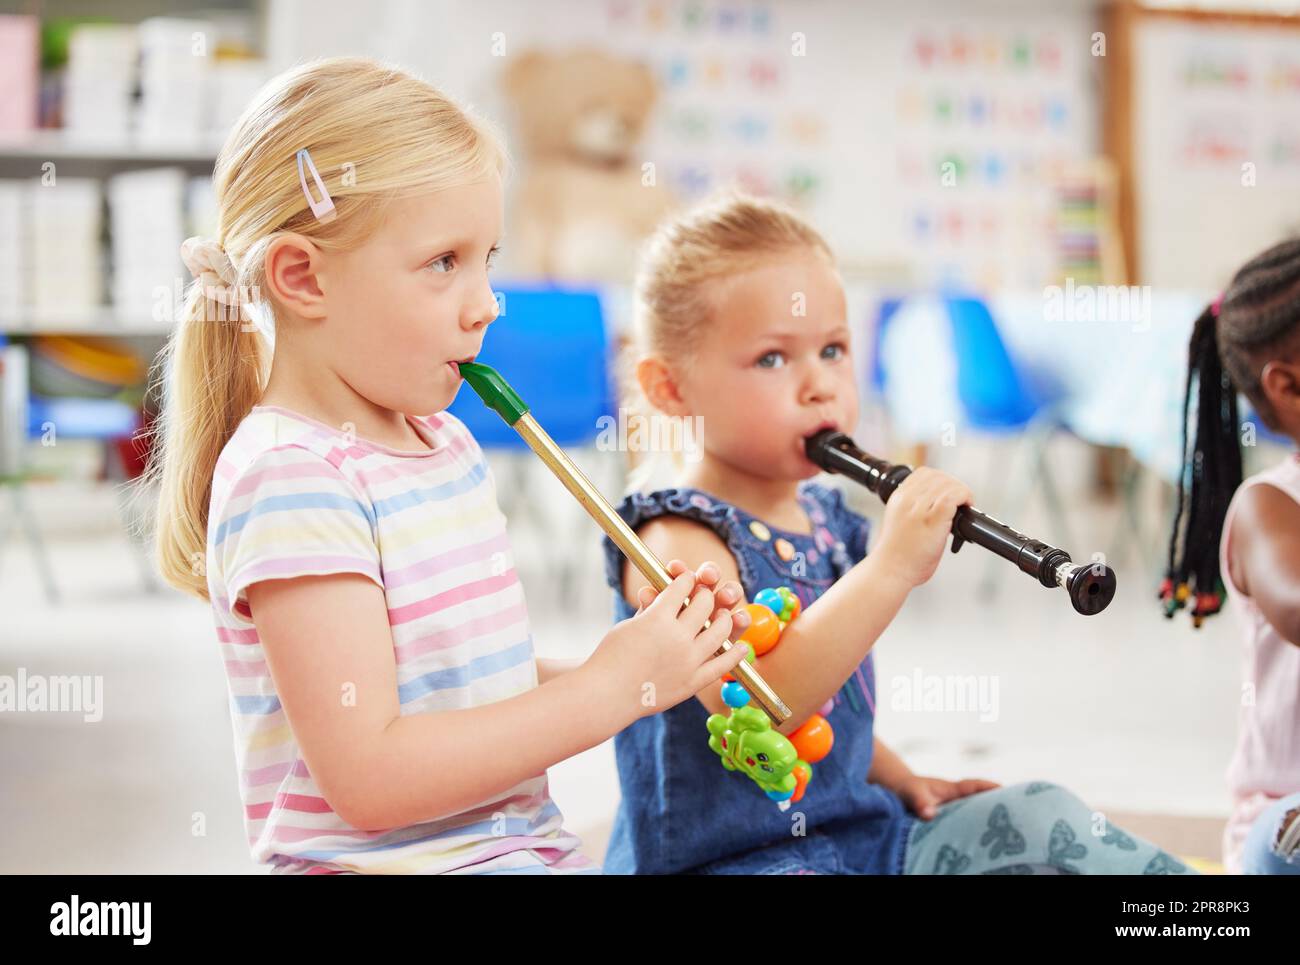 Suonare con gli strumenti offre una meravigliosa esperienza sensoriale. I bambini imparano a conoscere gli strumenti musicali in classe. Foto Stock